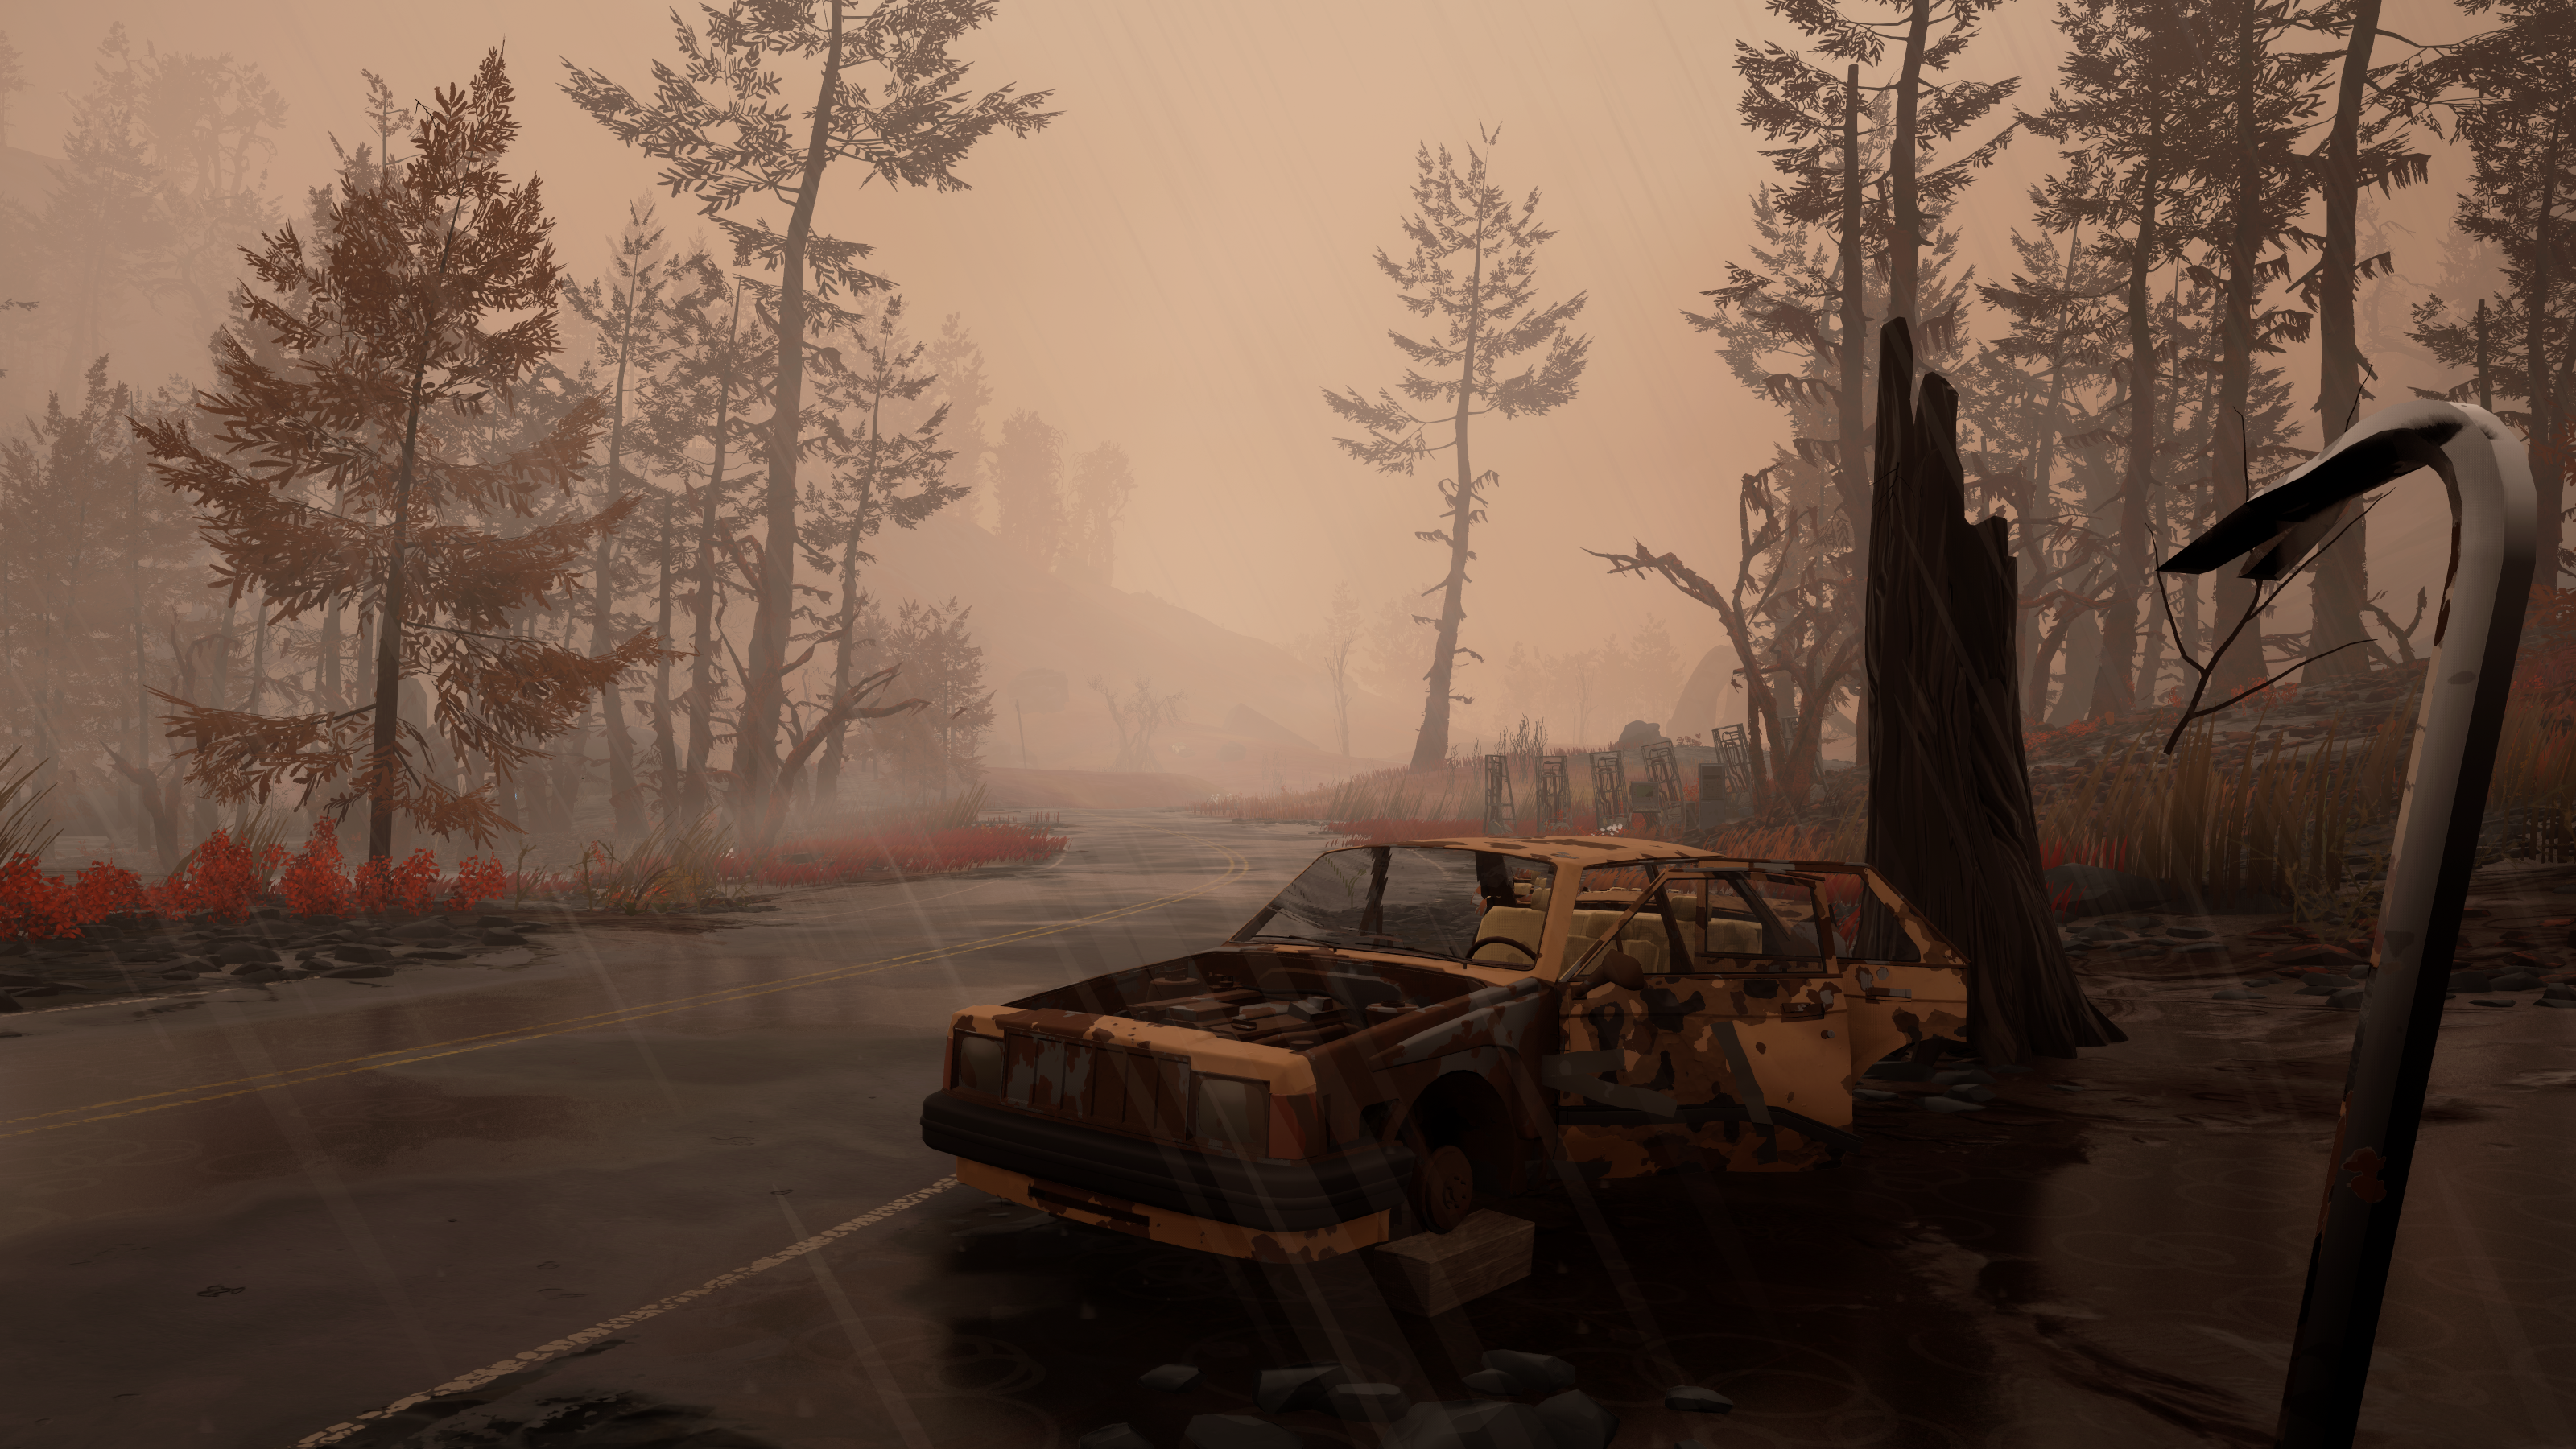 Aperçu de Pacific Drive - une voiture abandonnée au bord de la route dans une brume brune, le joueur tenant un pied de biche en vue à la première personne